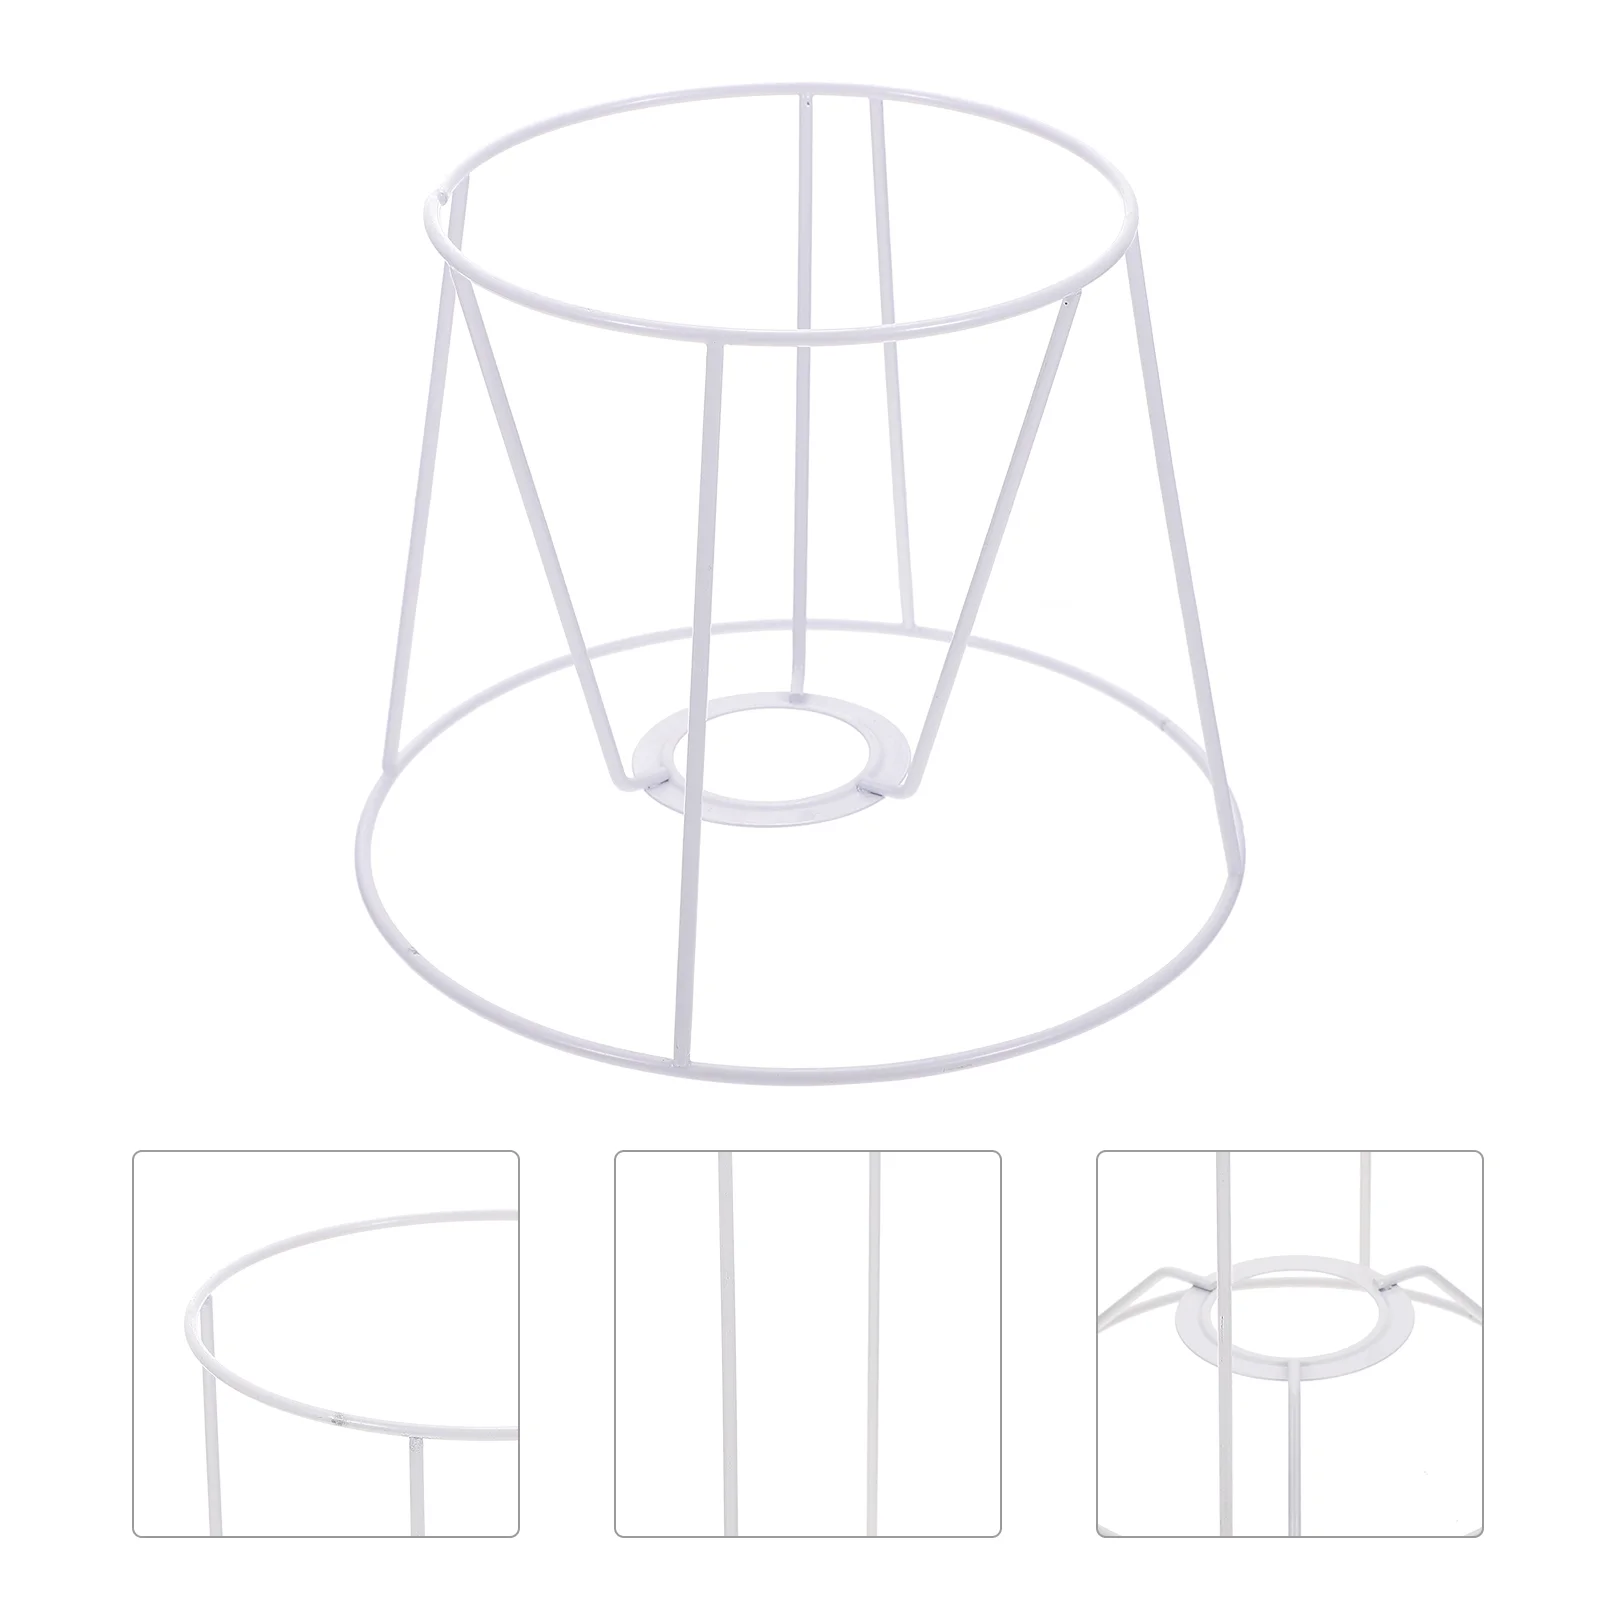 Металлическая рамка для абажура Кронштейн для потолочного освещения Diy Каркас для абажура Каркас для клетки Защита лампочки Аксессуар для люстры Абажур Спальня